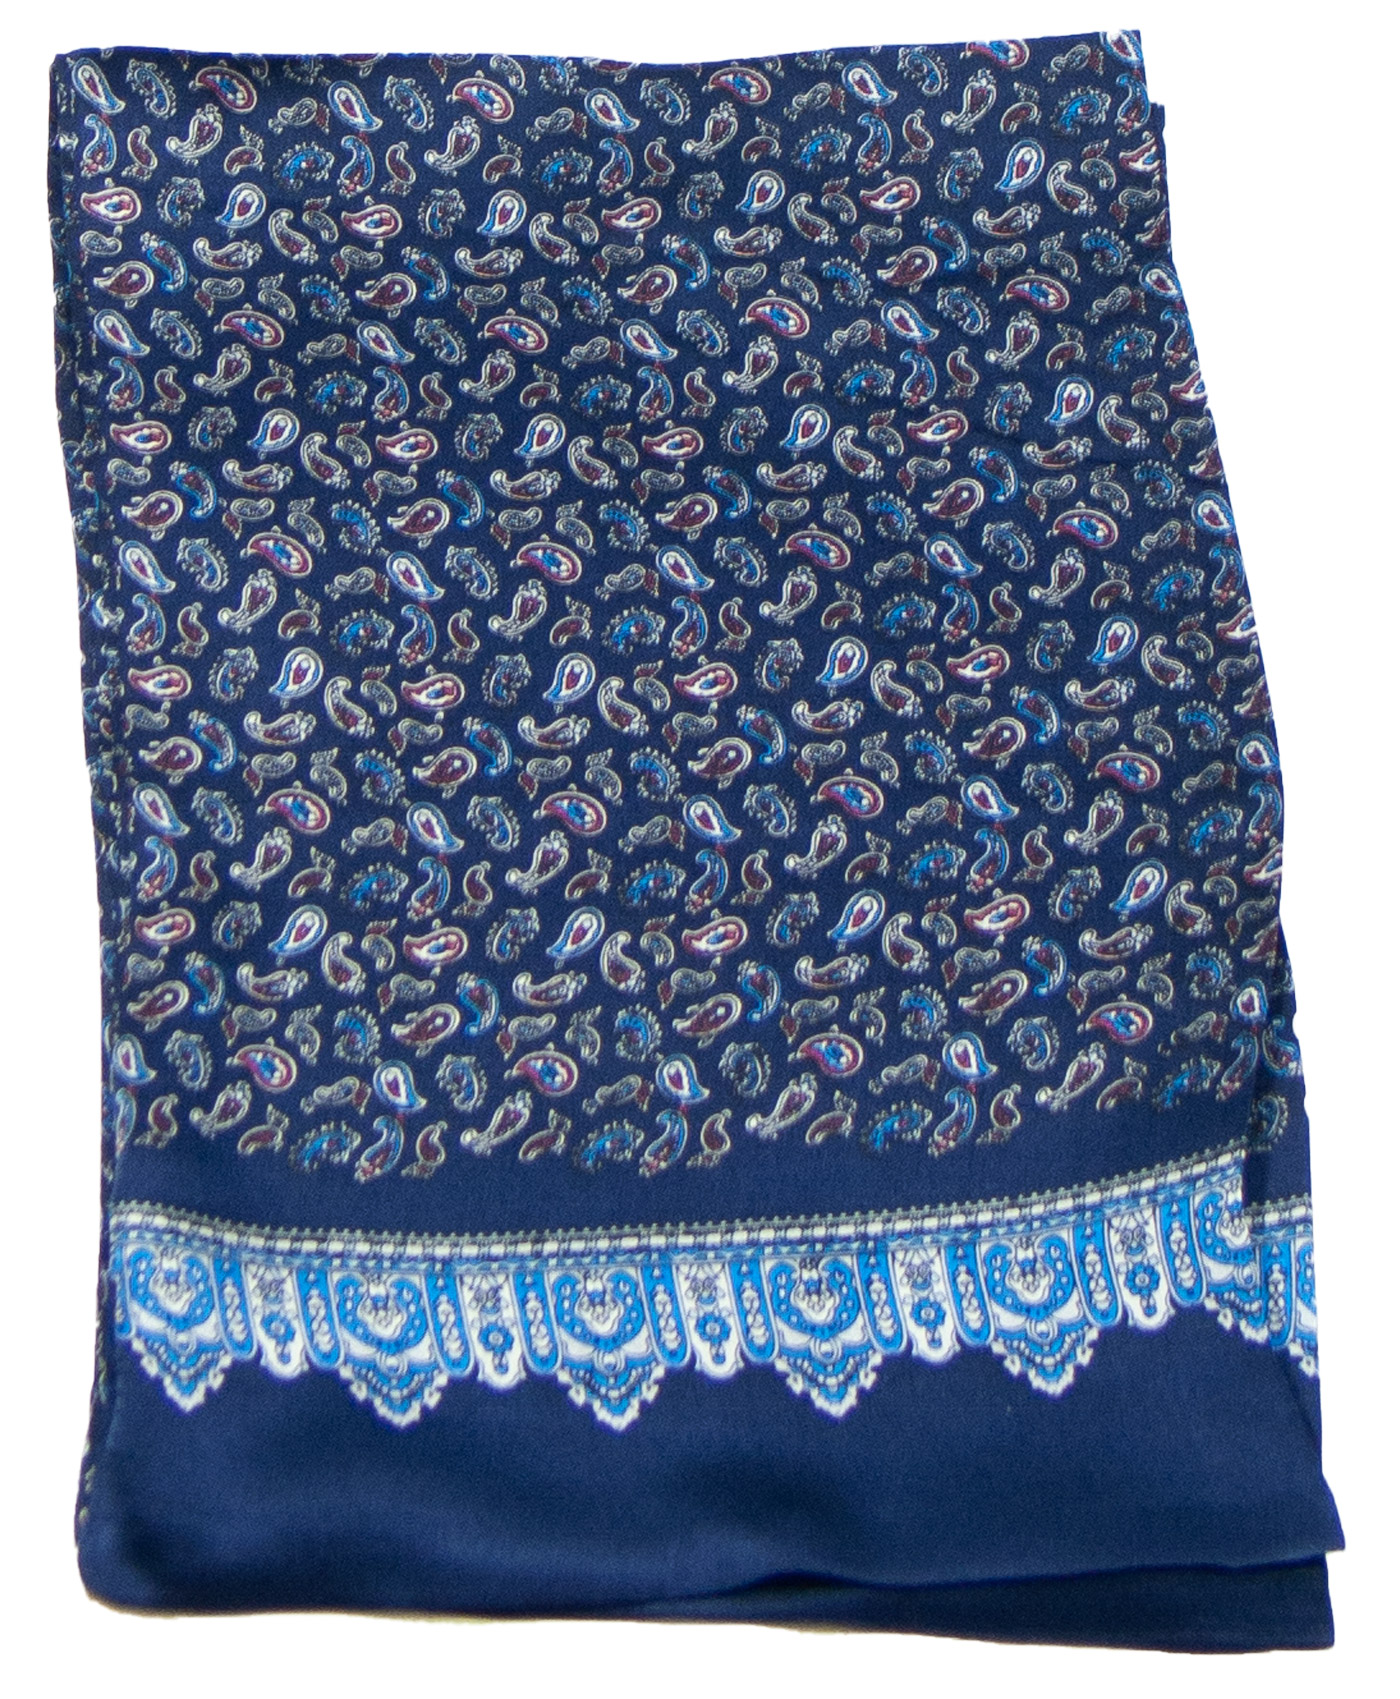 foulard pour homme en soie bleu marine paisley frise